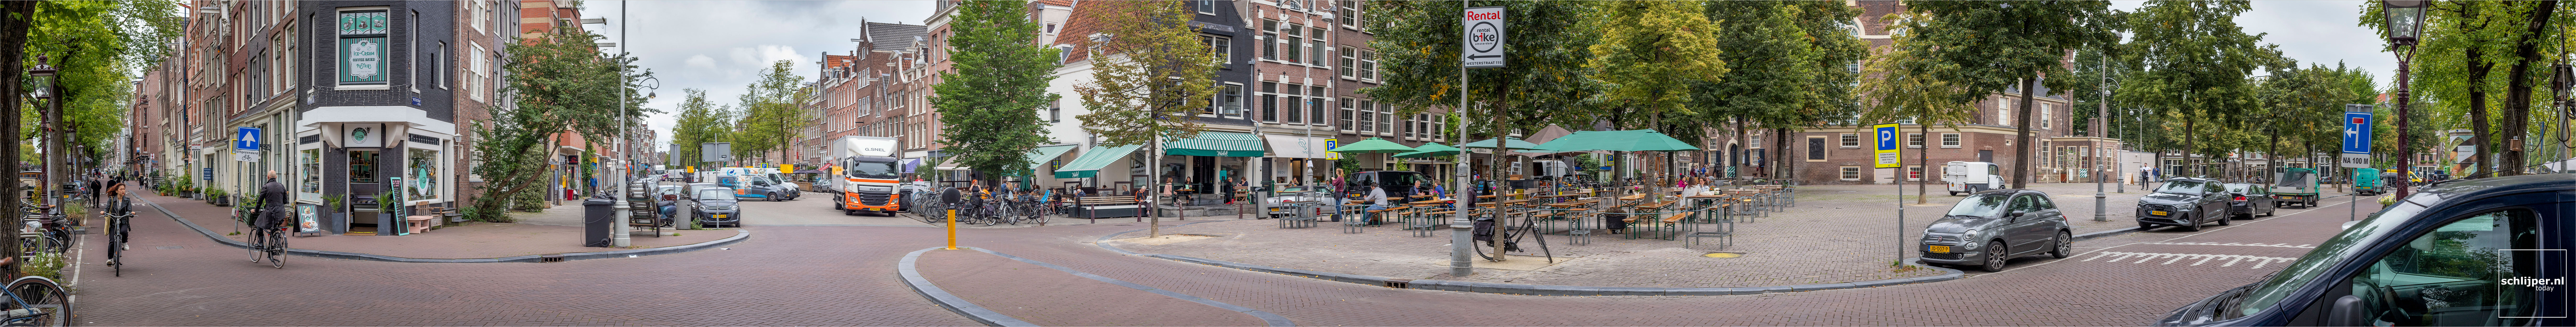 The Netherlands, Amsterdam, 1 september 2021